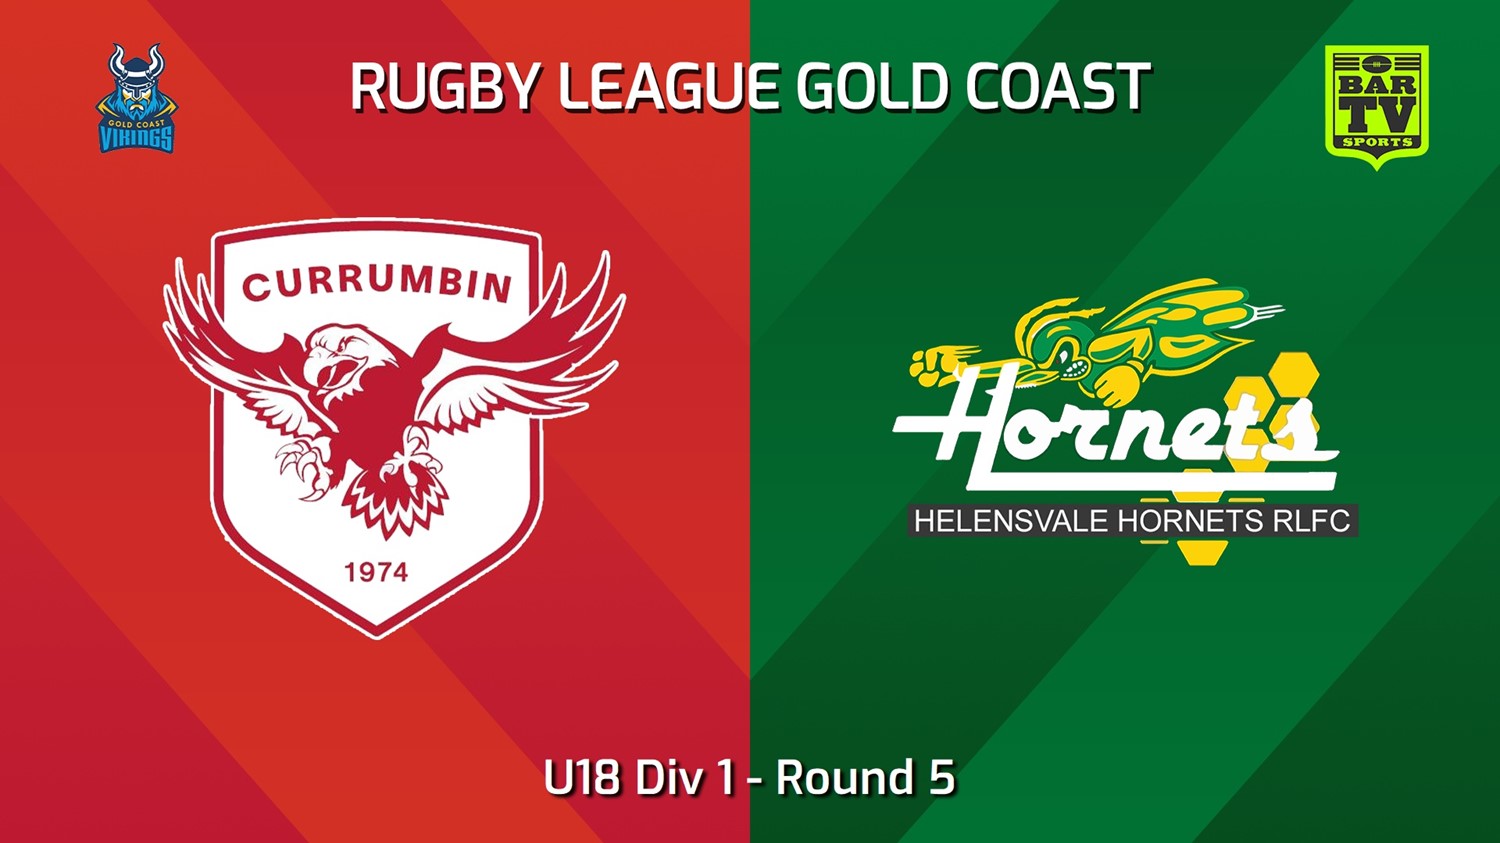 240526-video-Gold Coast Round 5 - U18 Div 1 - Currumbin Eagles v Helensvale Hornets Slate Image